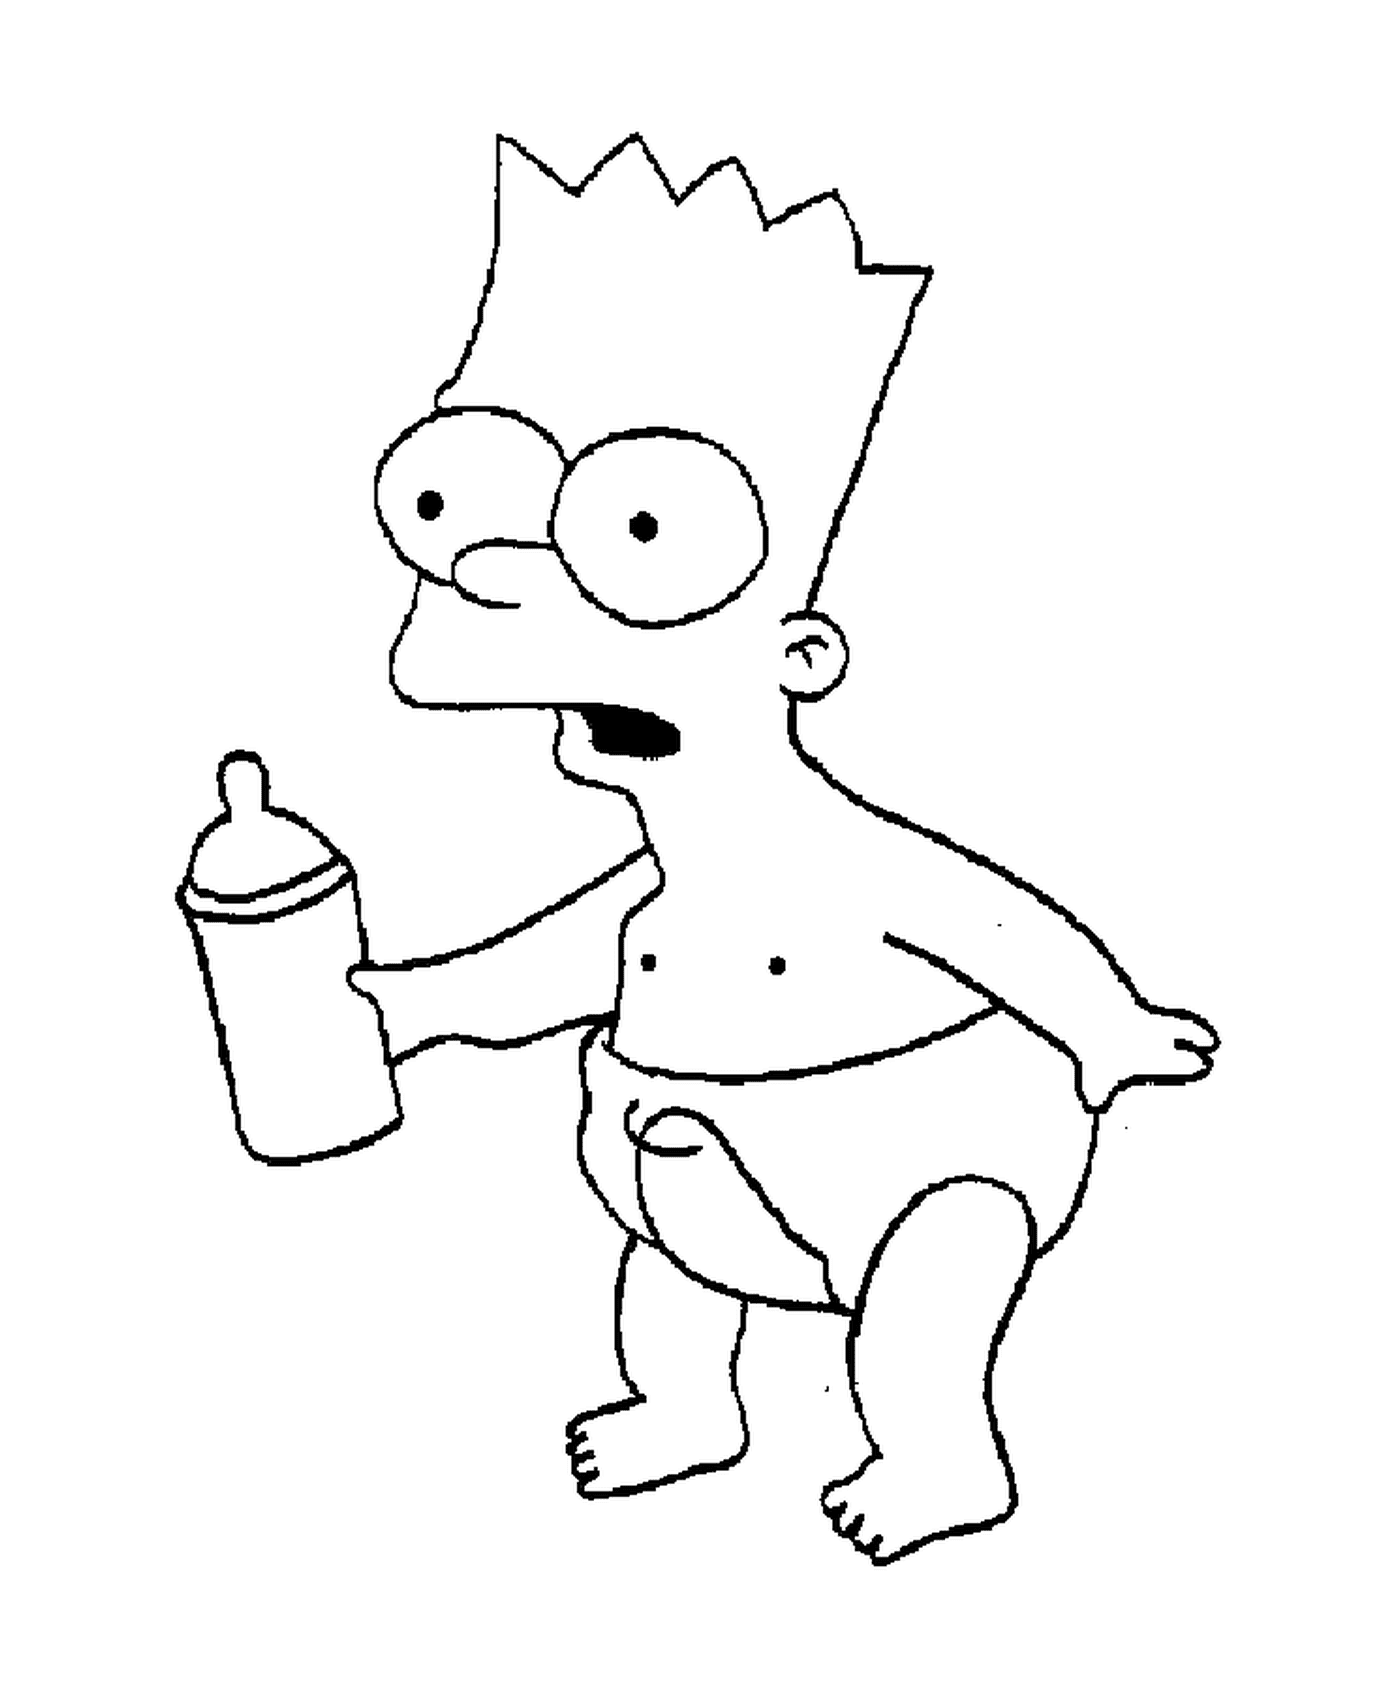  Bart en pañal, nadie sosteniendo una botella 